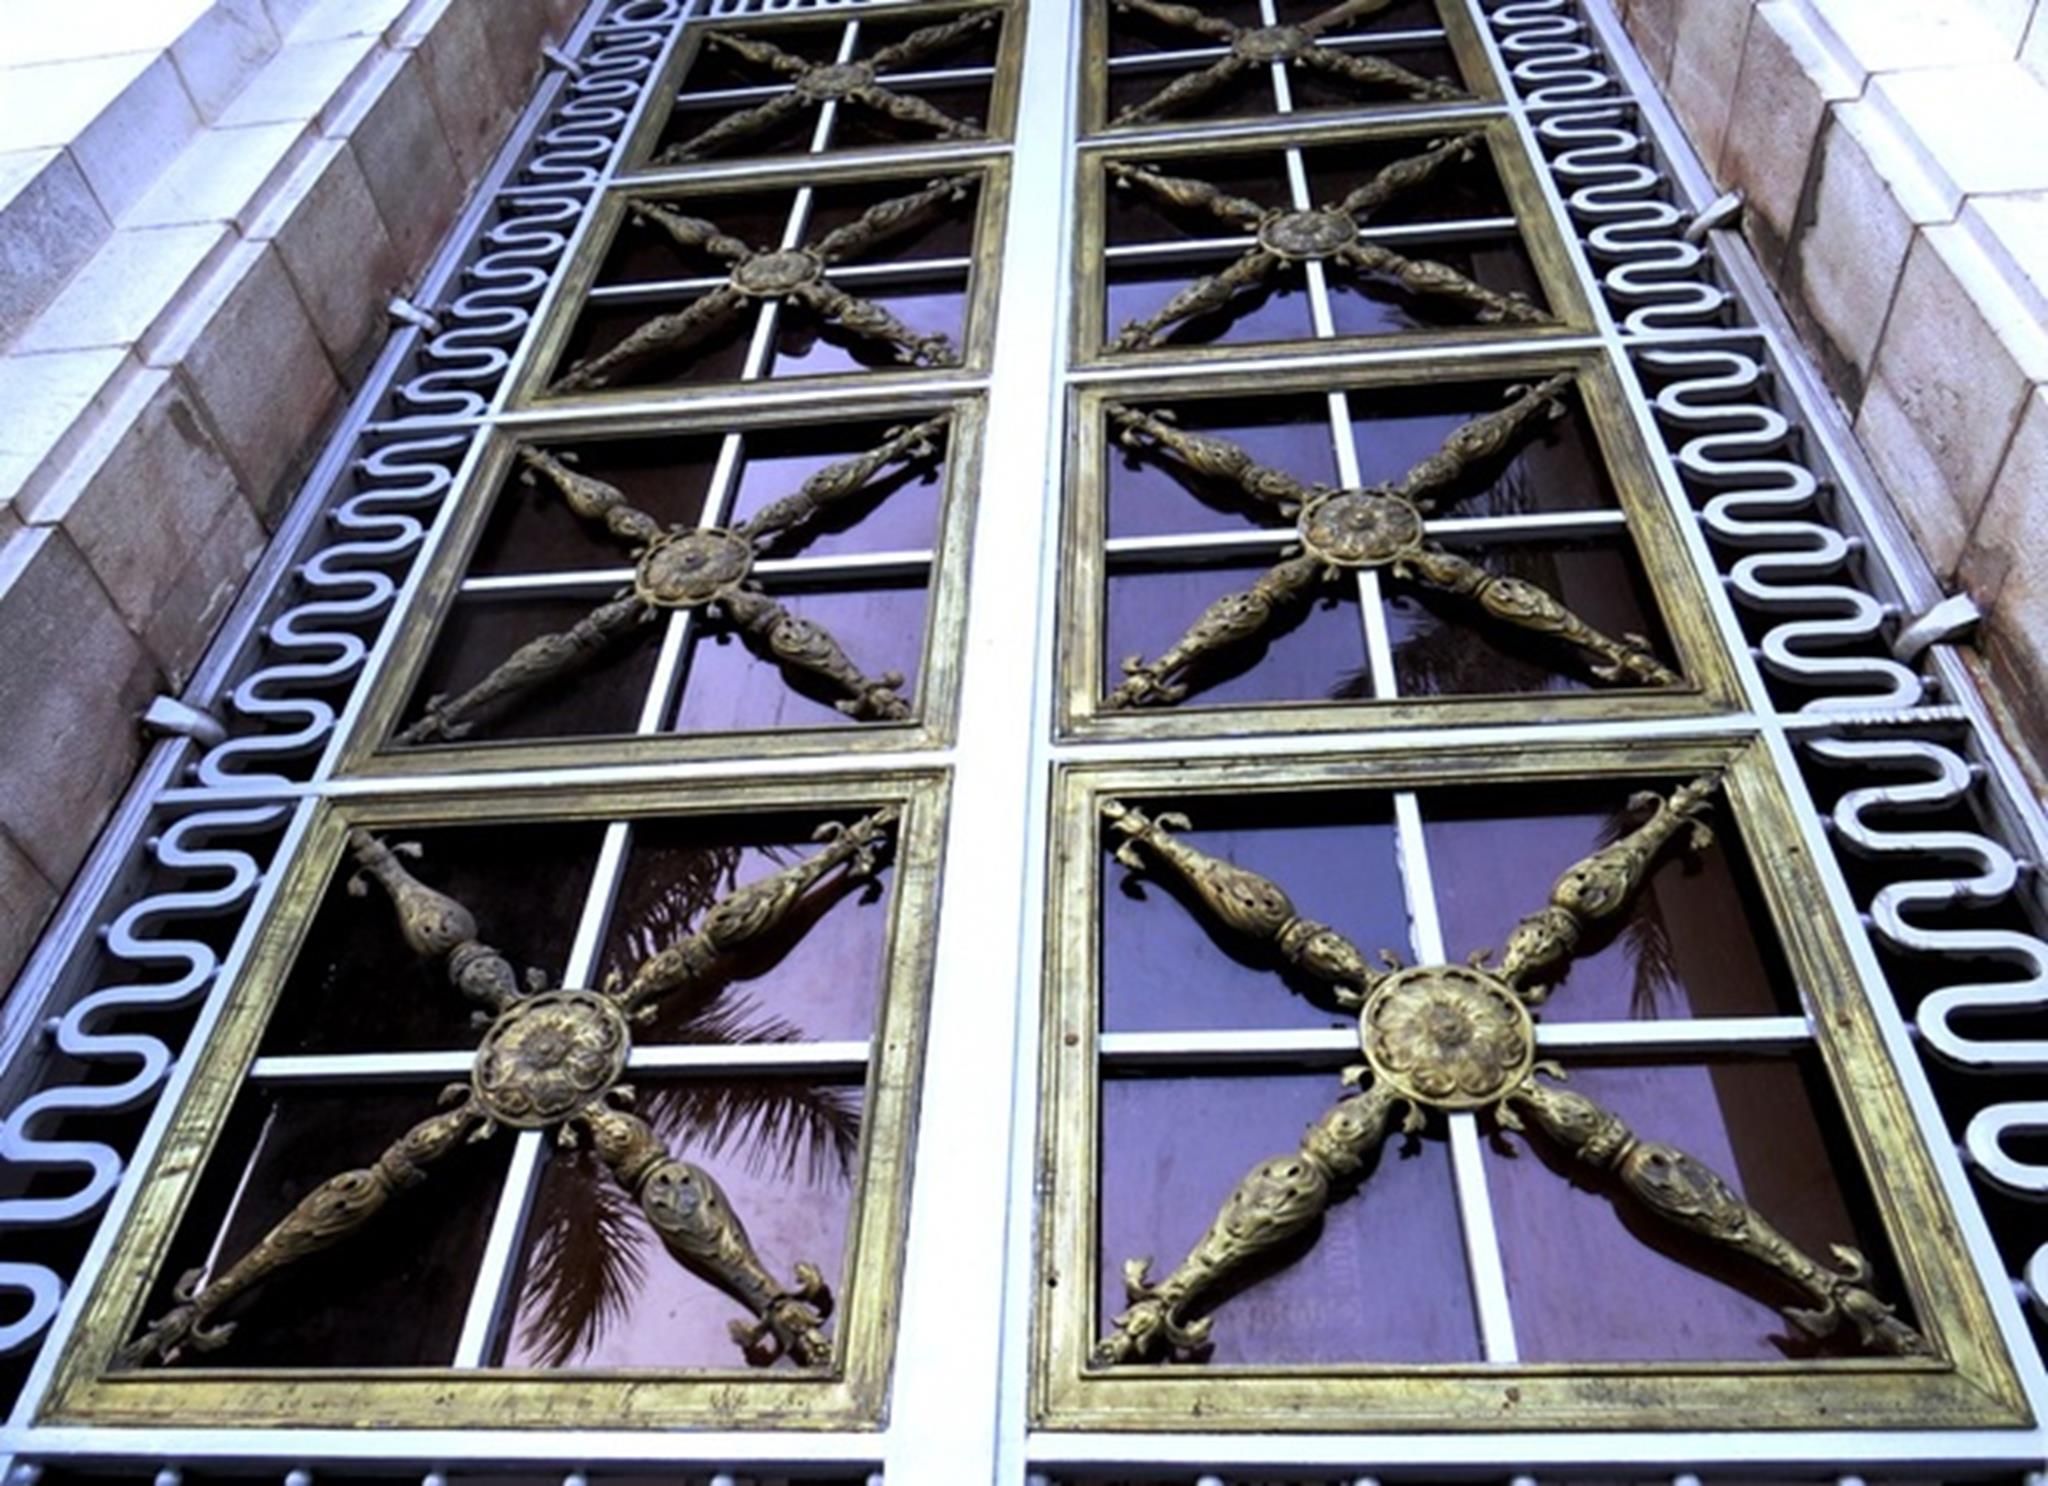 Những bộ cửa đại tại tiền sảnh cao khoảng 4 m, khung được làm bằng sắt vuông đặc, bên trong là các song chắn cách điệu được đúc bằng đồng.